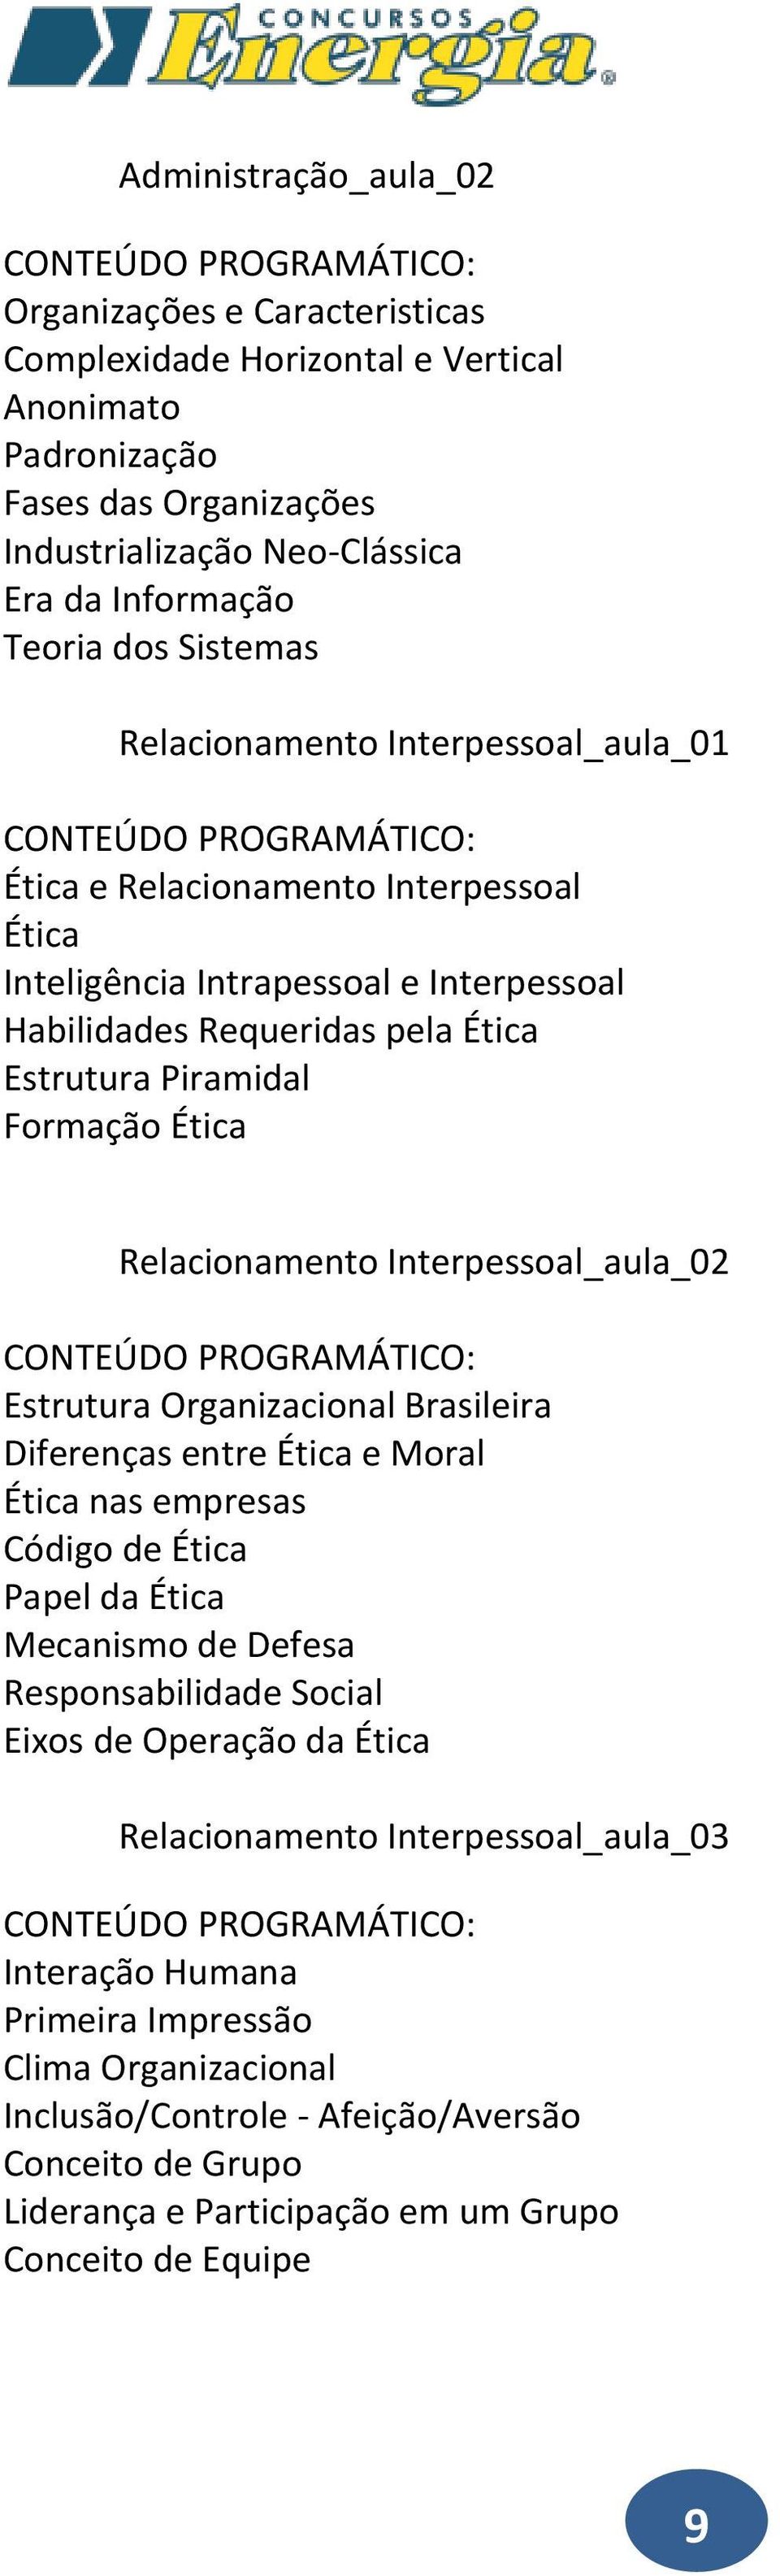 Relacionamento Interpessoal_aula_02 Estrutura Organizacional Brasileira Diferenças entre Ética e Moral Ética nas empresas Código de Ética Papel da Ética Mecanismo de Defesa Responsabilidade Social